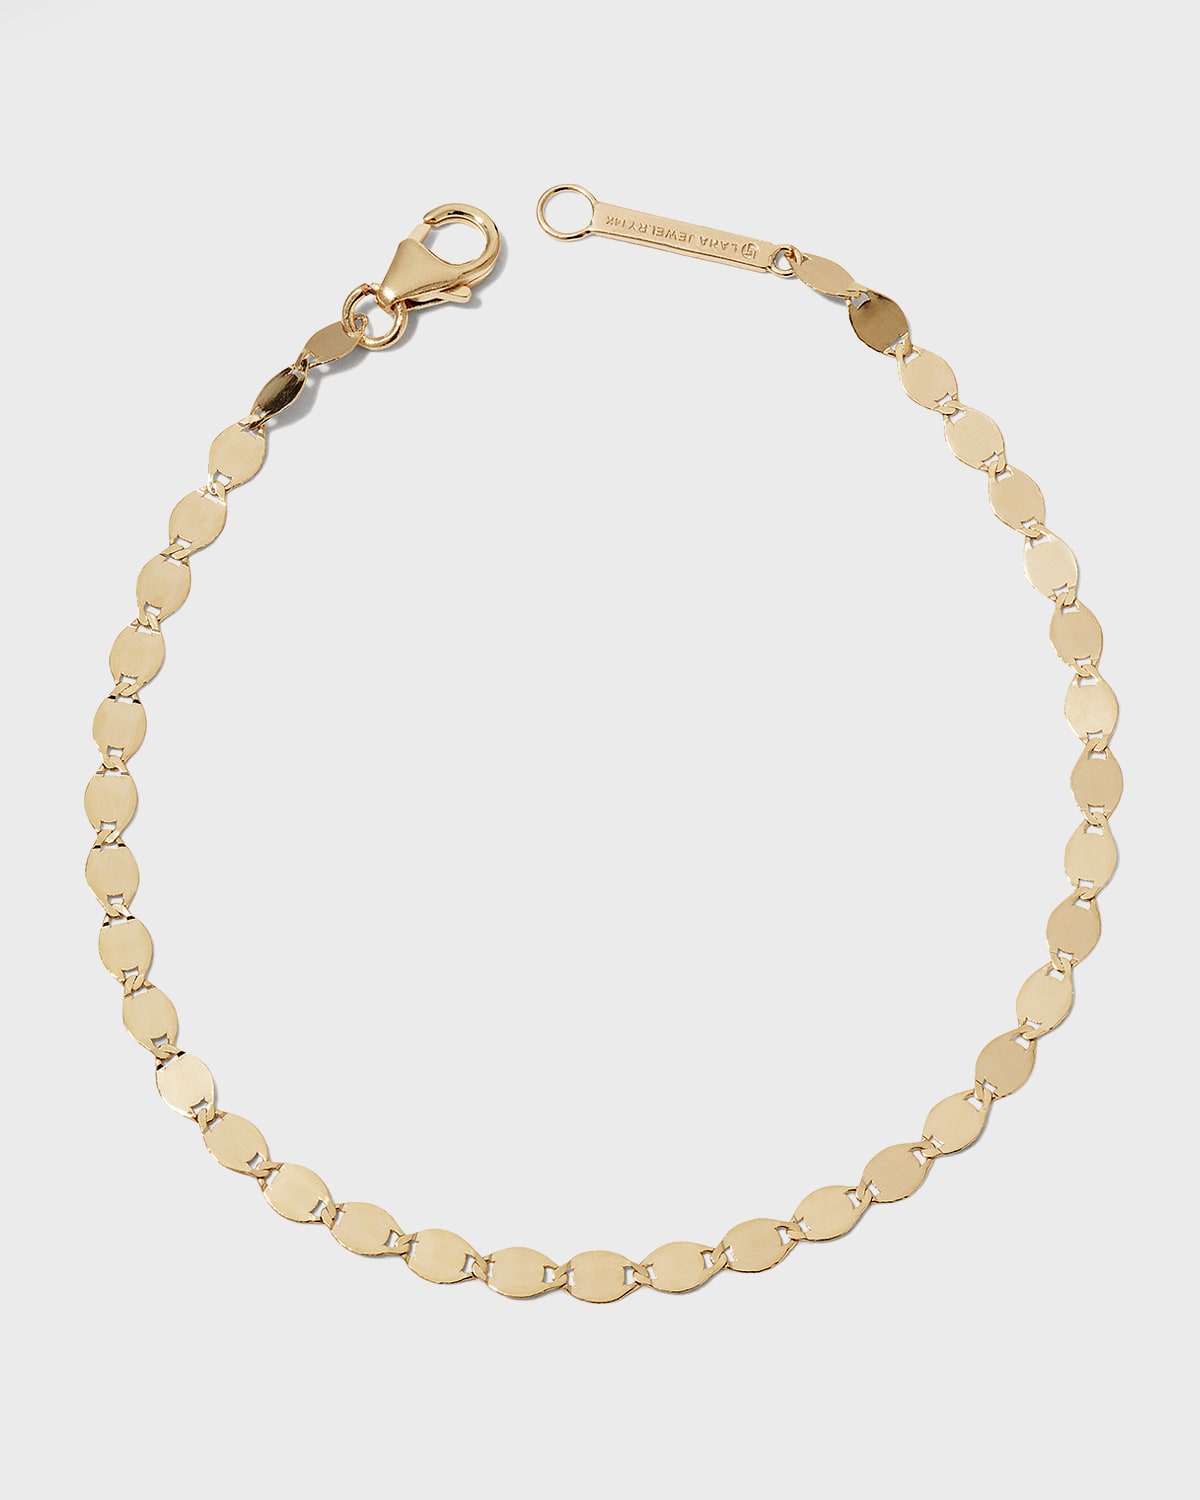 Nude Multi-Strand Chain Bracelet in 14K Gold